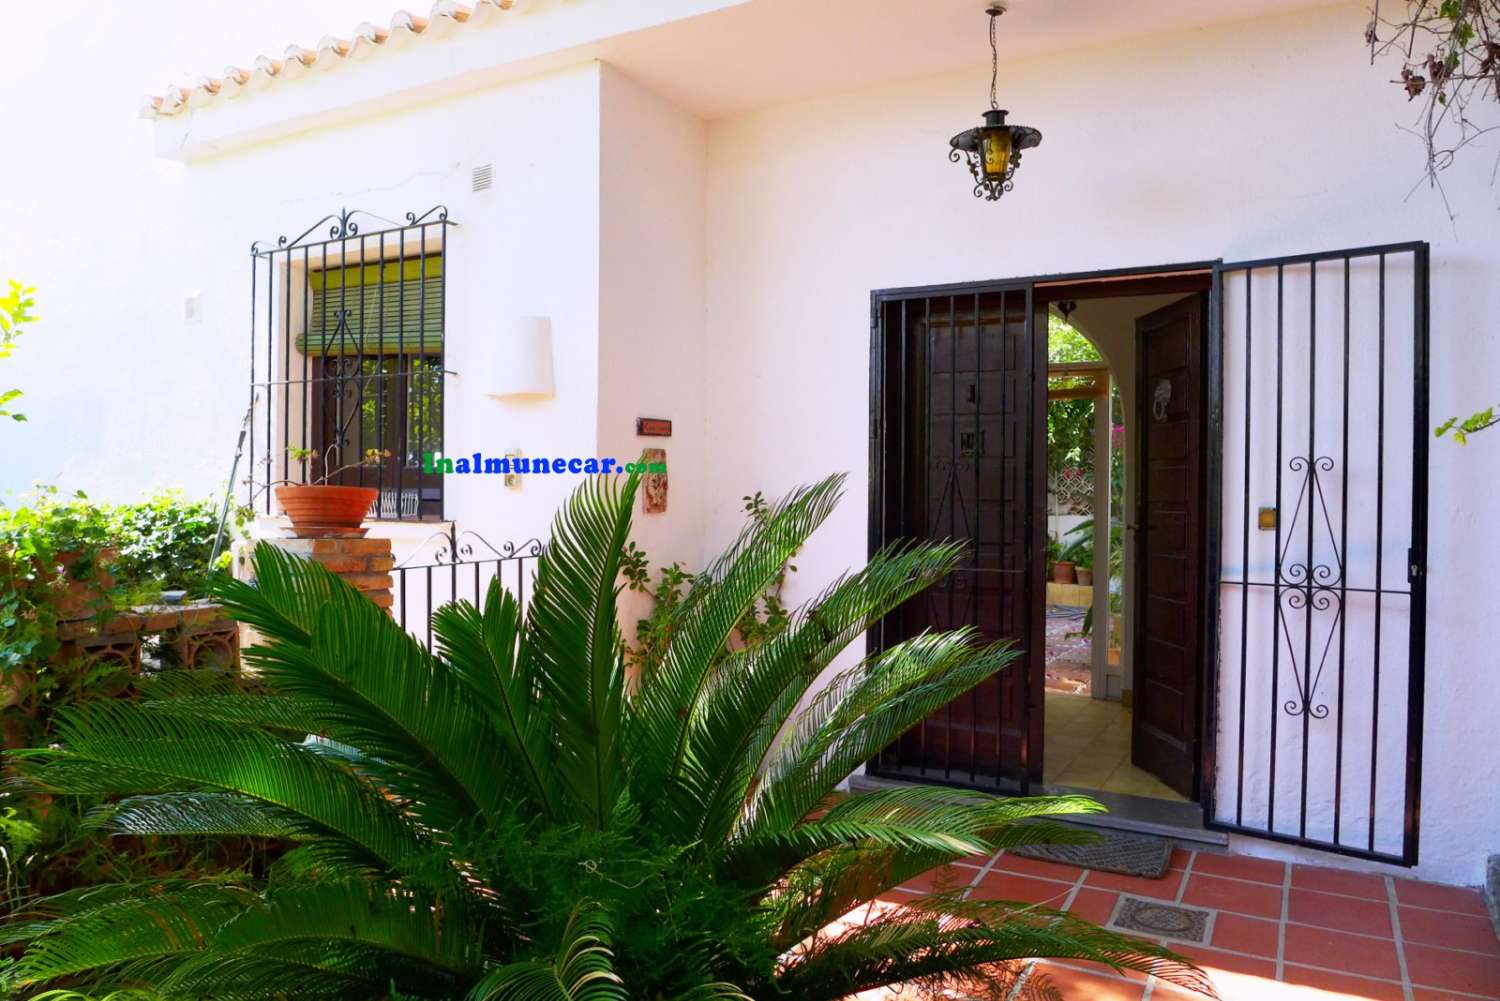 Exclusive bohemian villa for sale in Cotobro - Almuñécar, with amazing location and views.